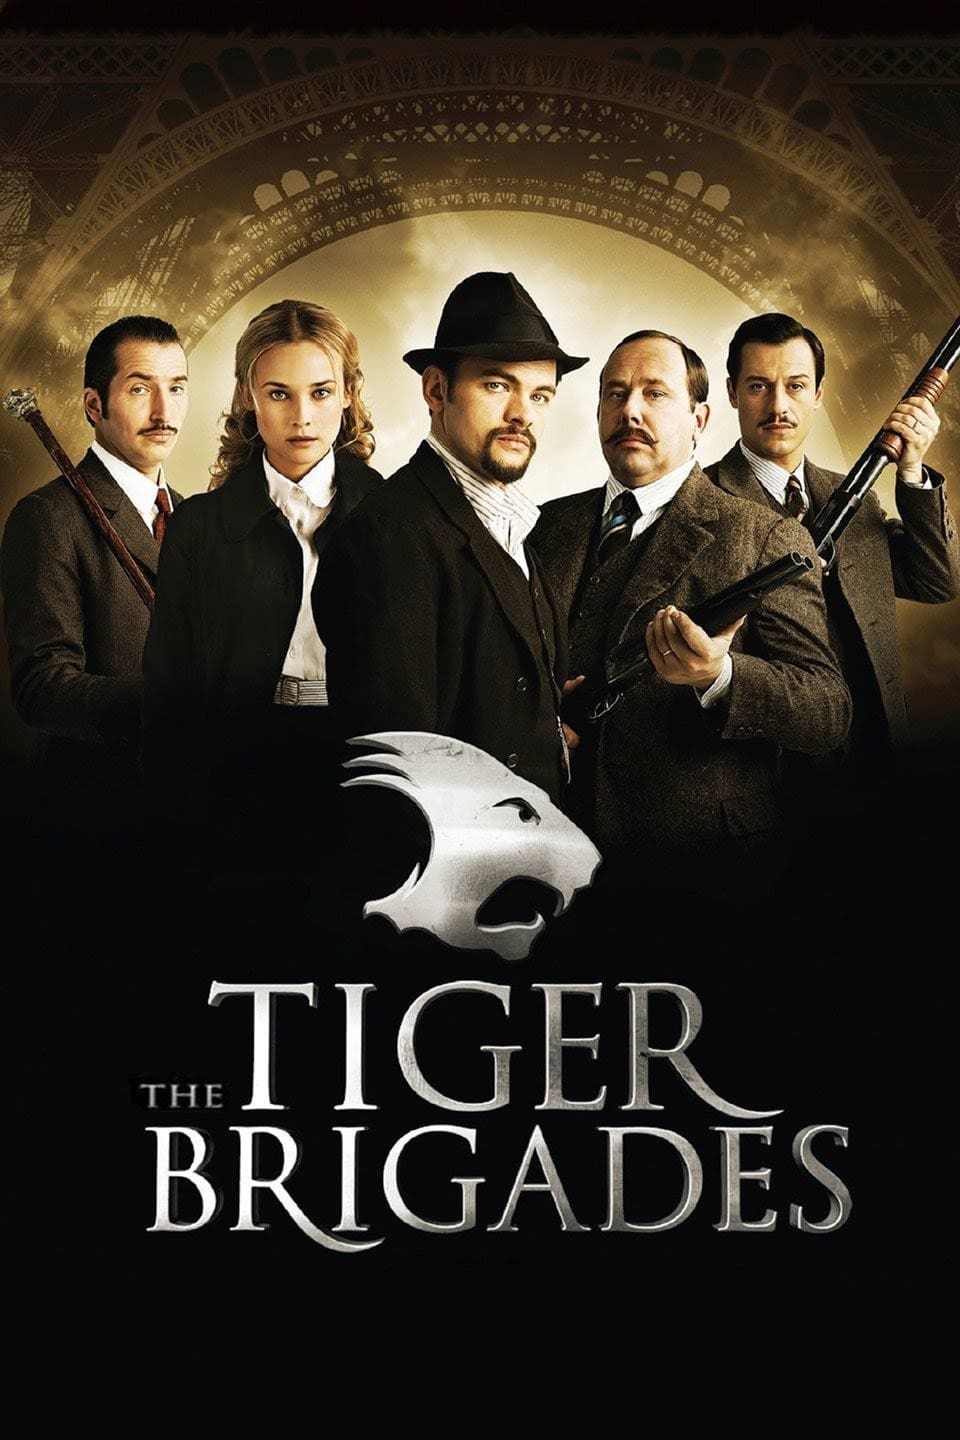 The Tiger Brigades (2006)